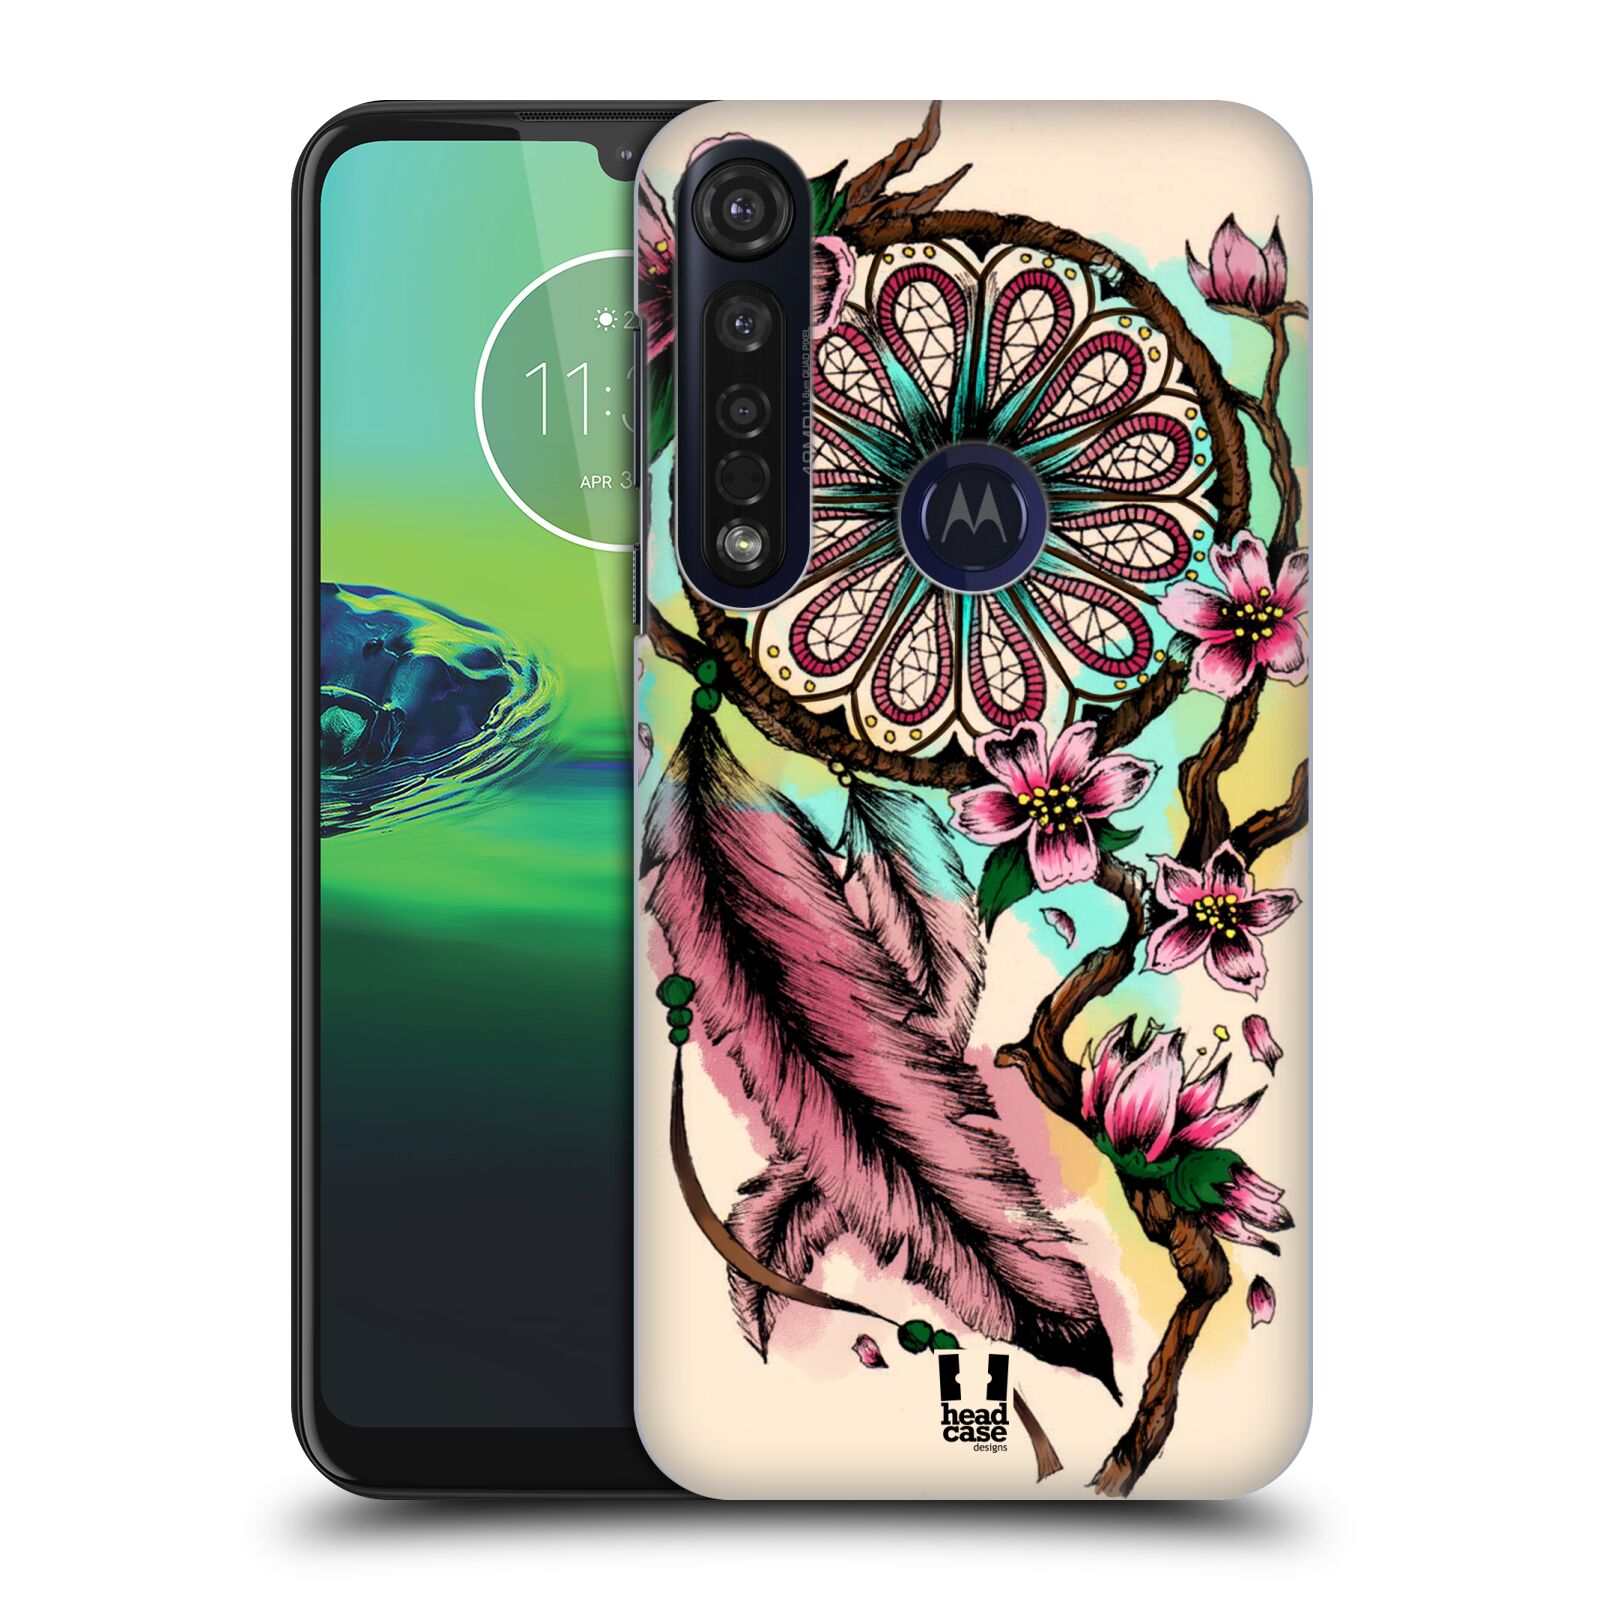 Pouzdro na mobil Motorola Moto G8 PLUS - HEAD CASE - vzor Květy lapač snů růžová